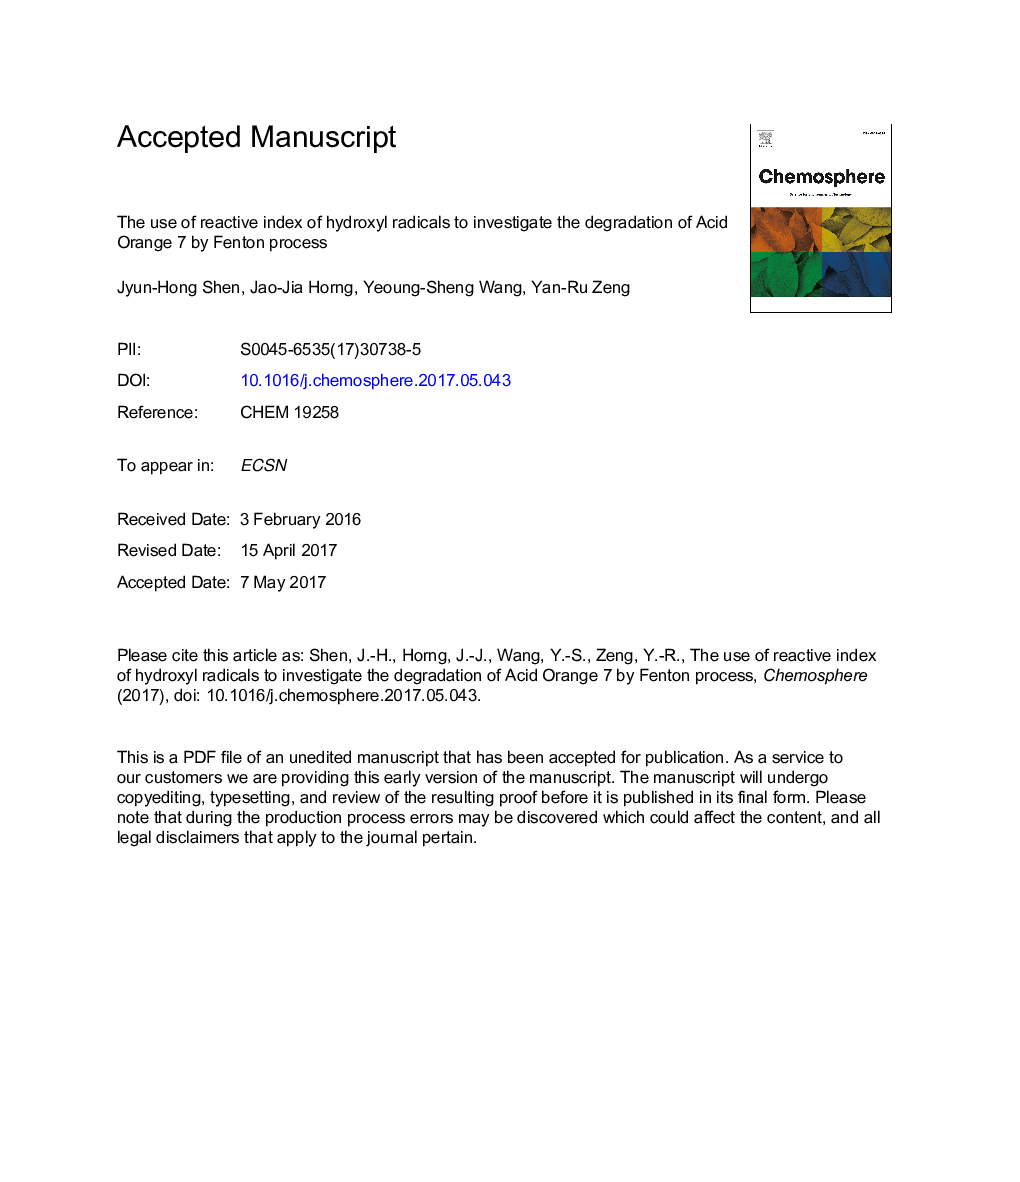 استفاده از شاخص راکتیو رادیکال های هیدروکسیل برای بررسی تخریب اسید پرتقال 7 توسط فرایند فنتون 